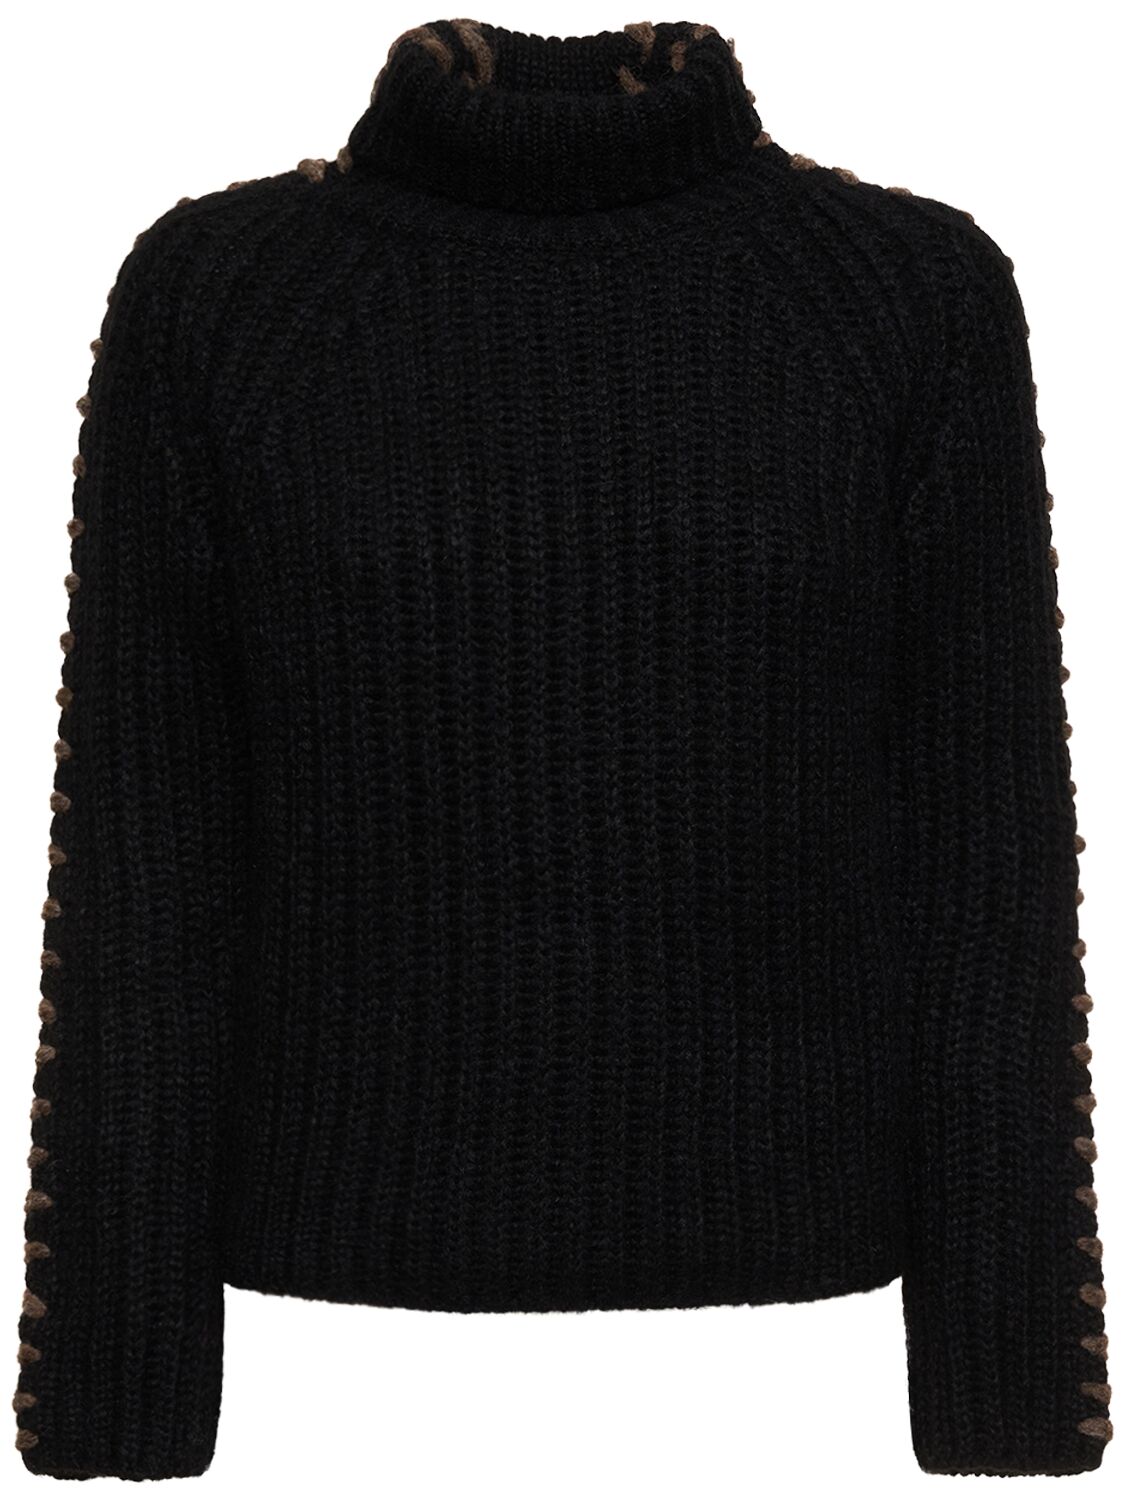 Sweater Aus Wollstrickripp Mit Rollkragen - ERMANNO SCERVINO - Modalova